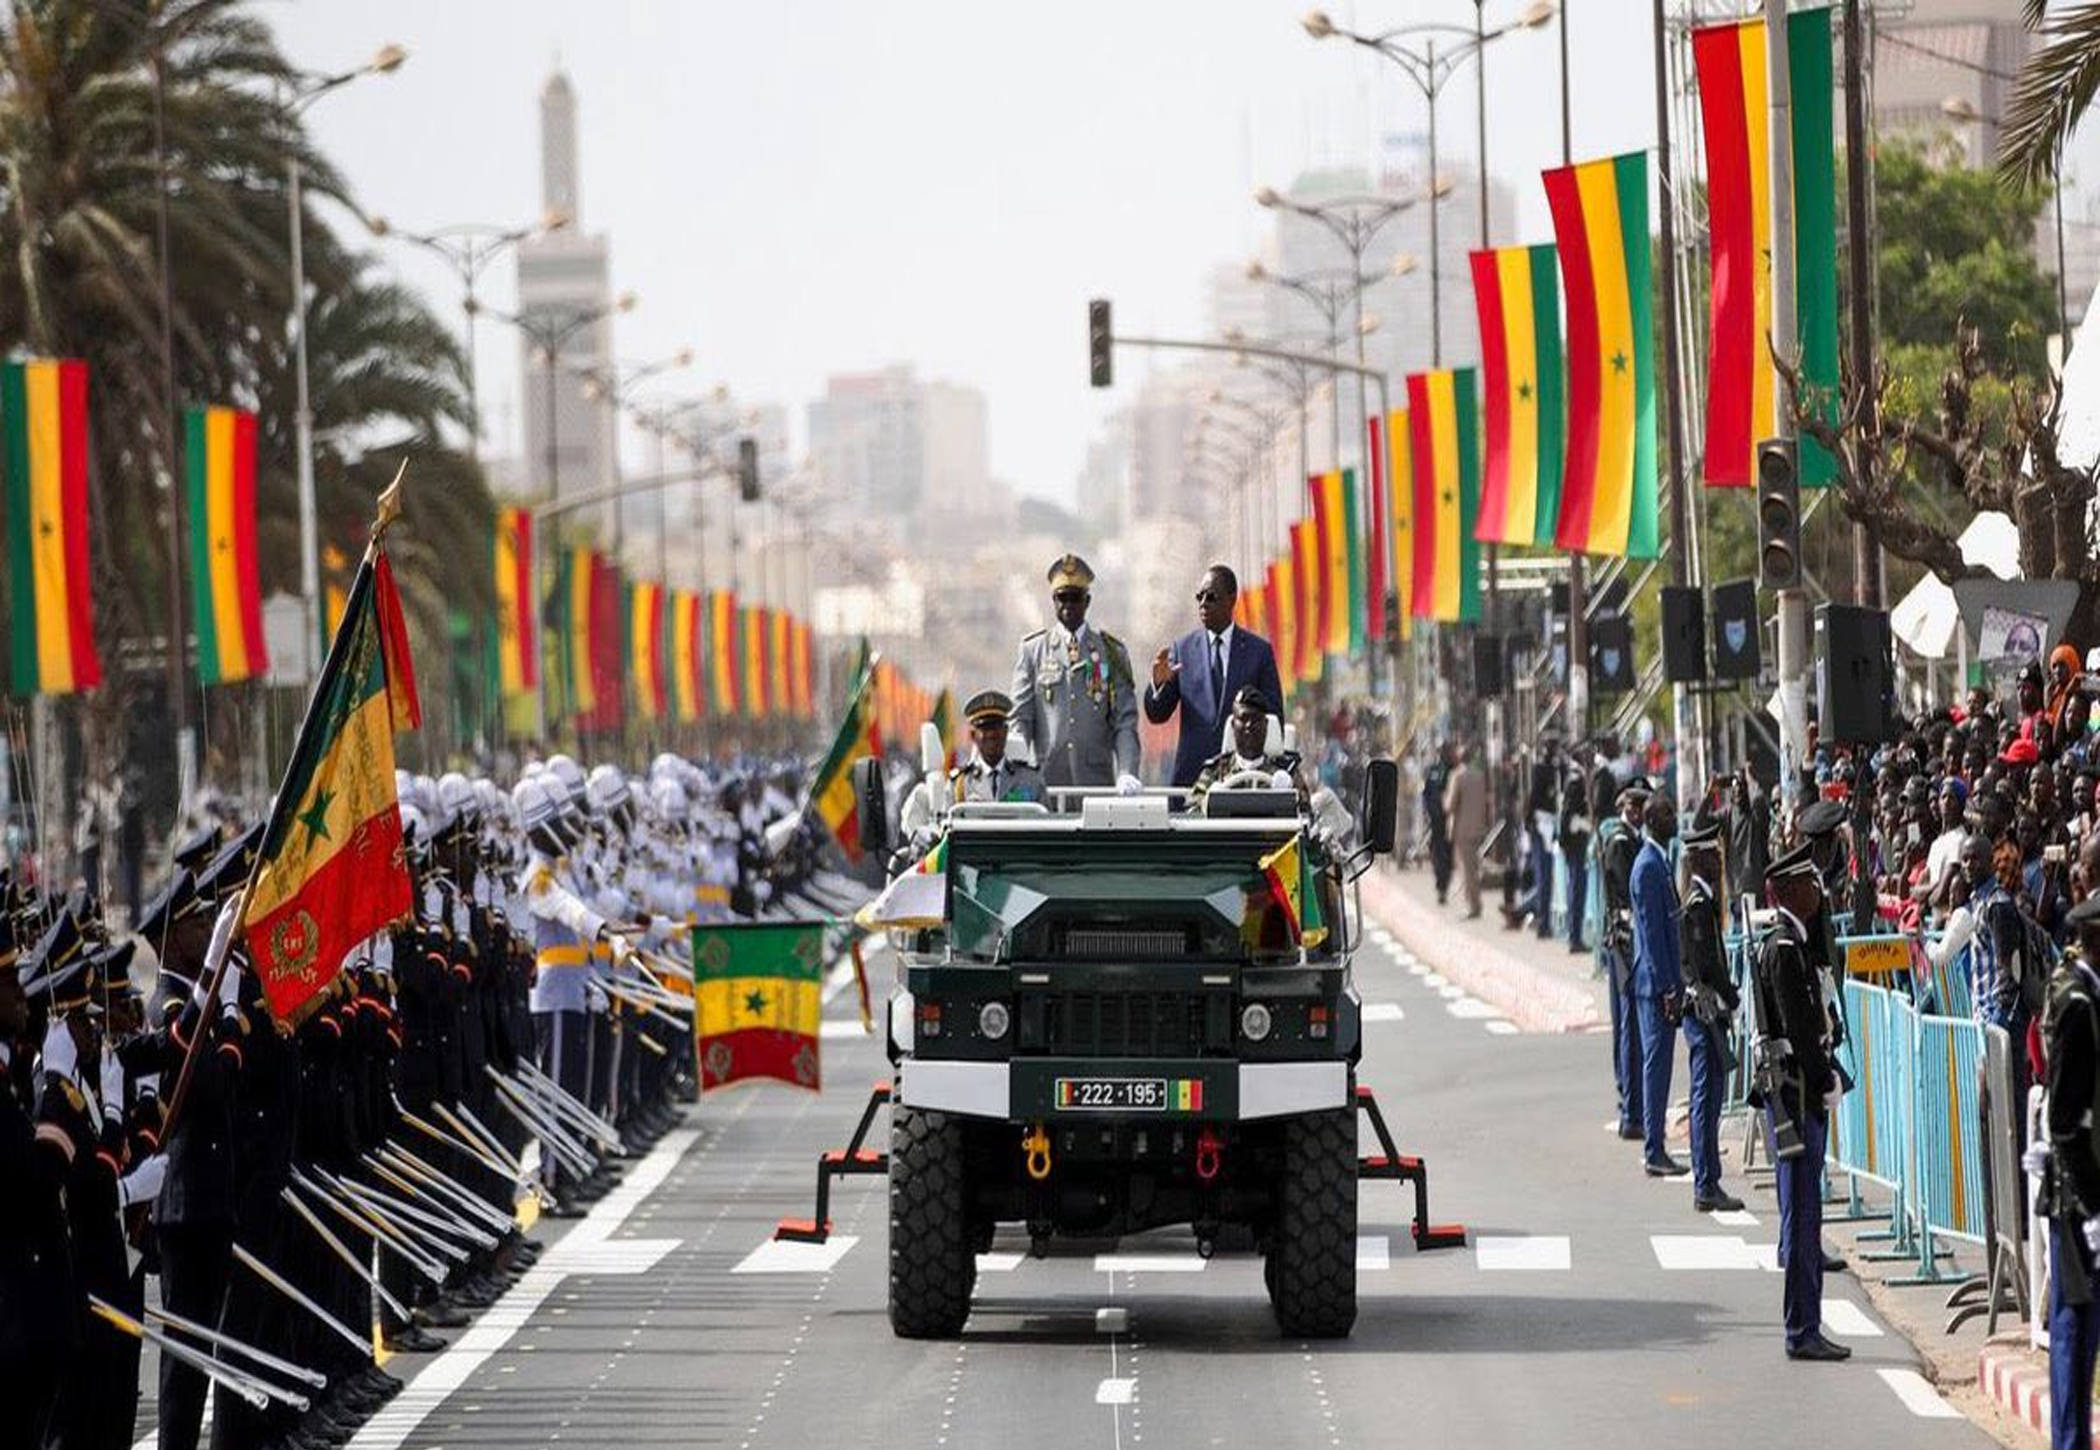 Direct de la célébration de la fête de l'indépendance du Sénégal